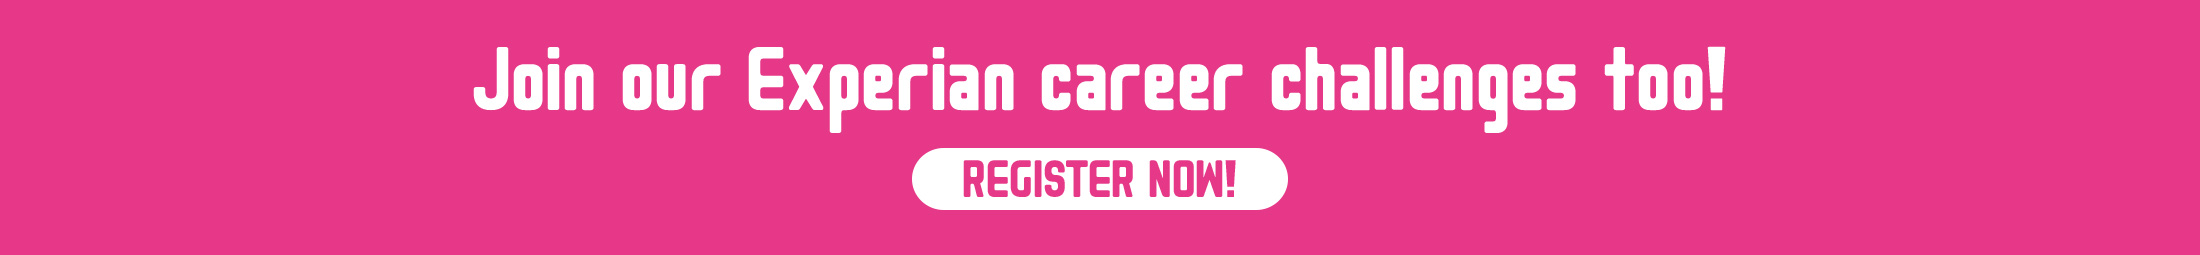 Register for our live online career challenge